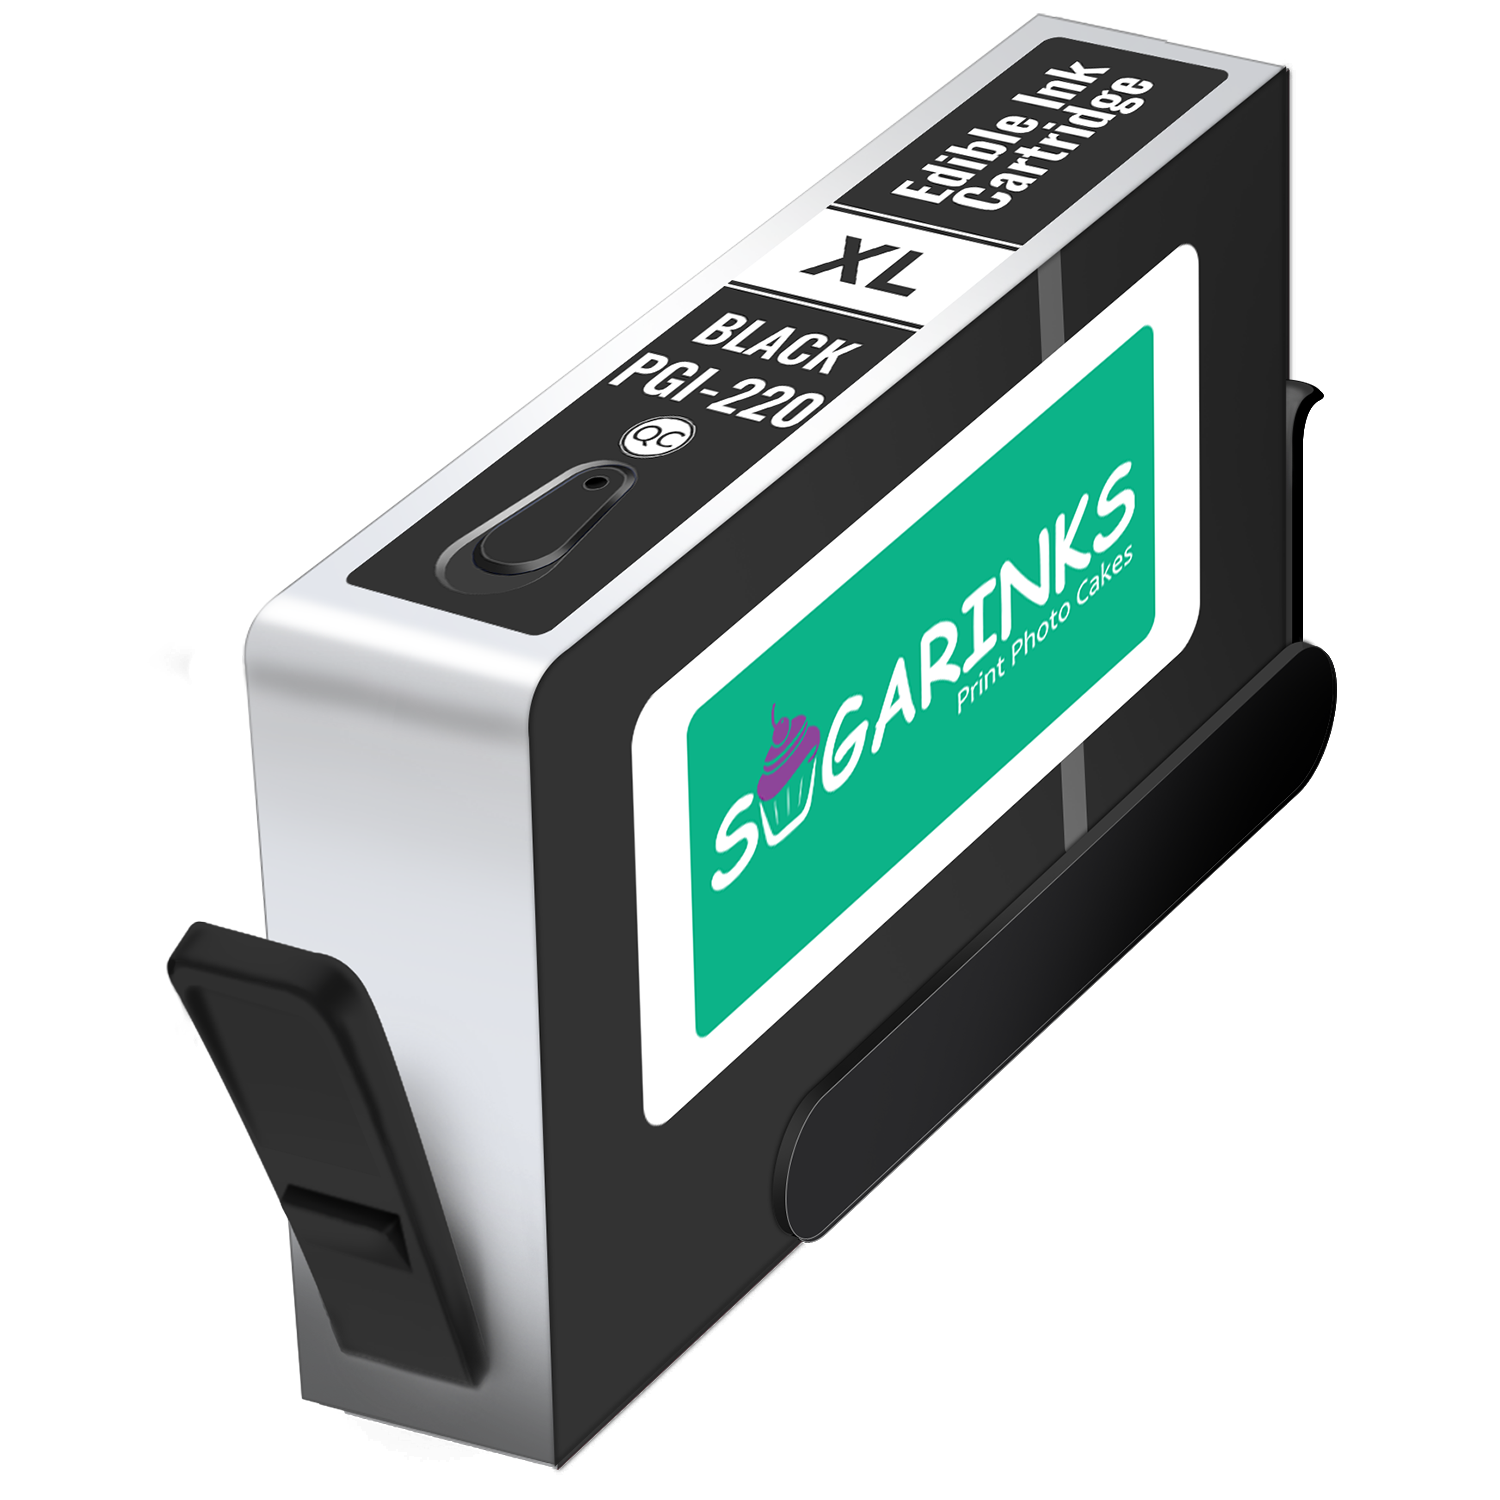 Sugarinks Edible Ink Cartridge PGI-220BK for Canon Edible Printers – Black